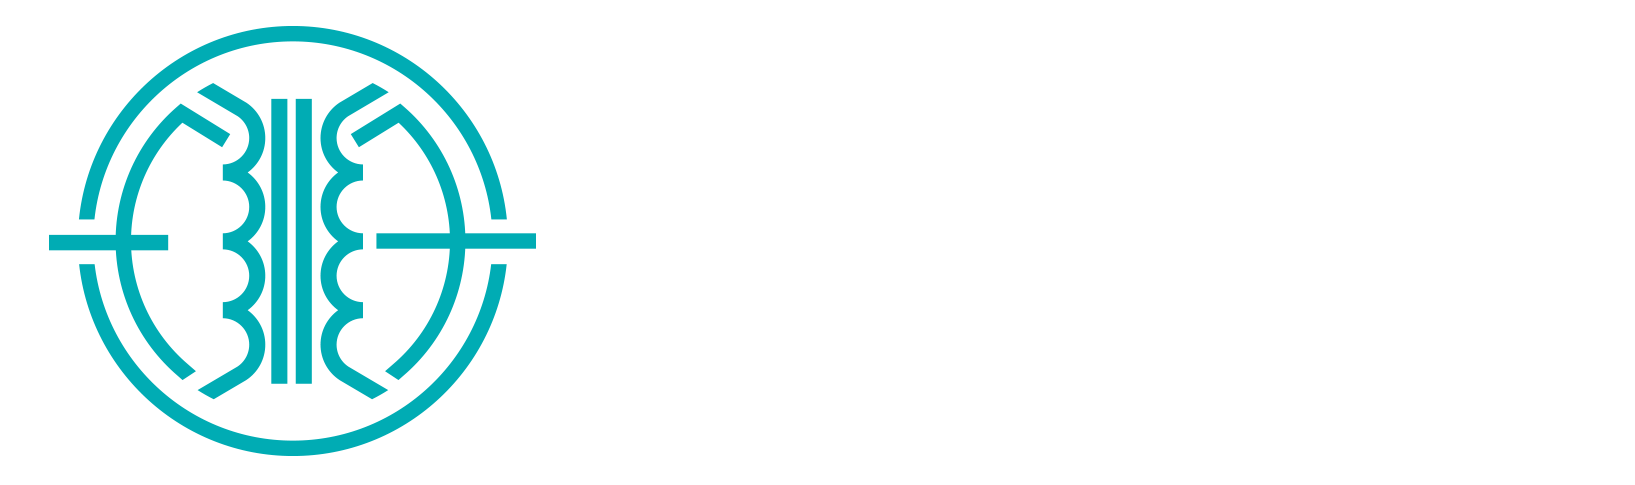 X-FORM Audio